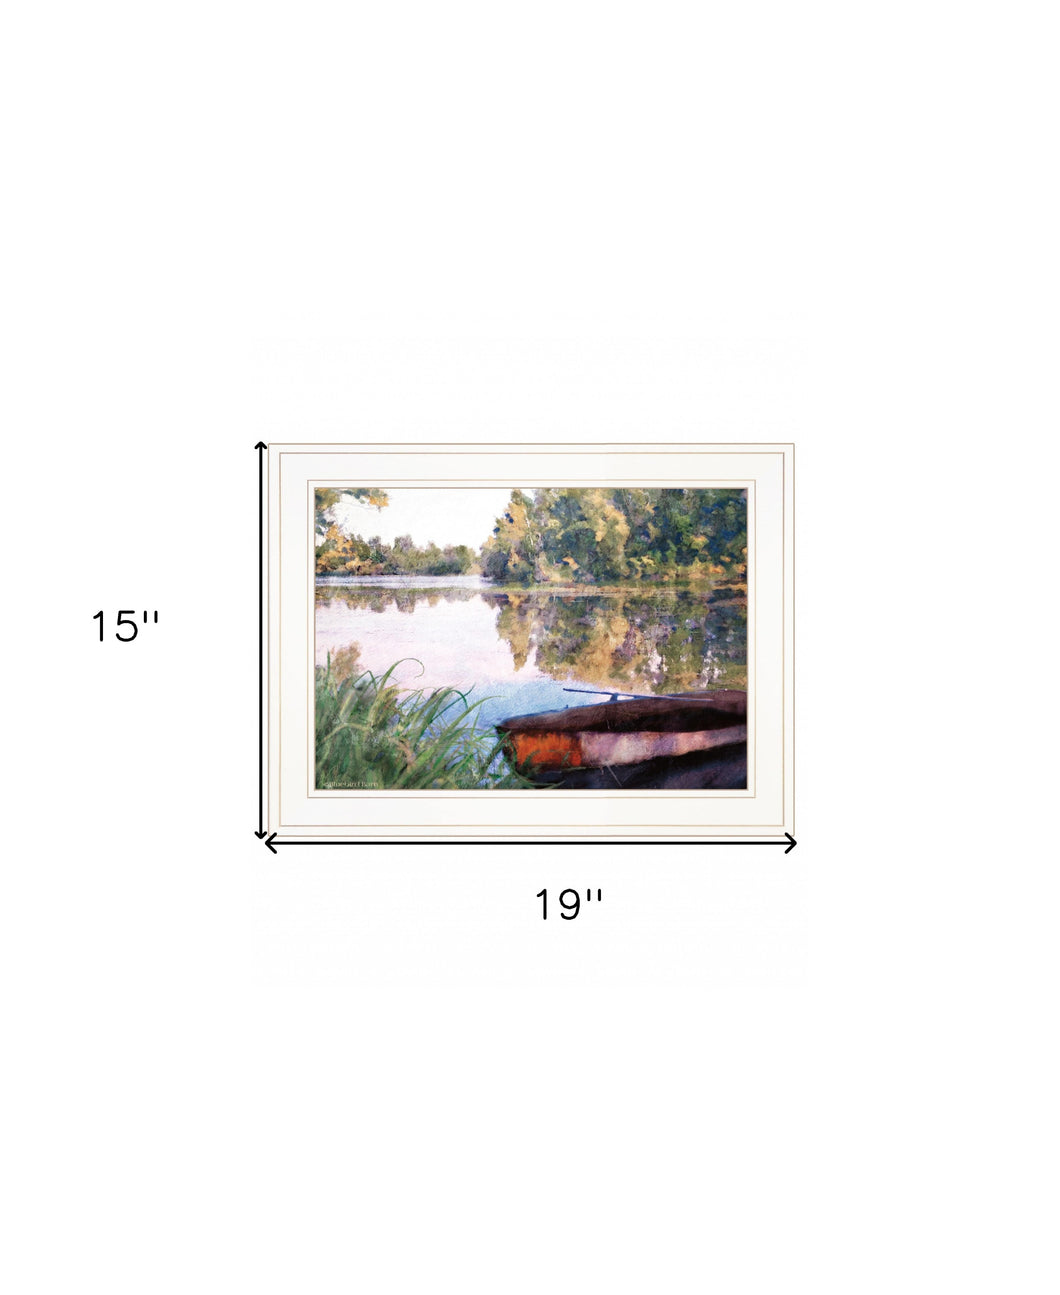 Rowboat Pond Landscape 2 White Framed Print Wall Art - Buy JJ's Stuff